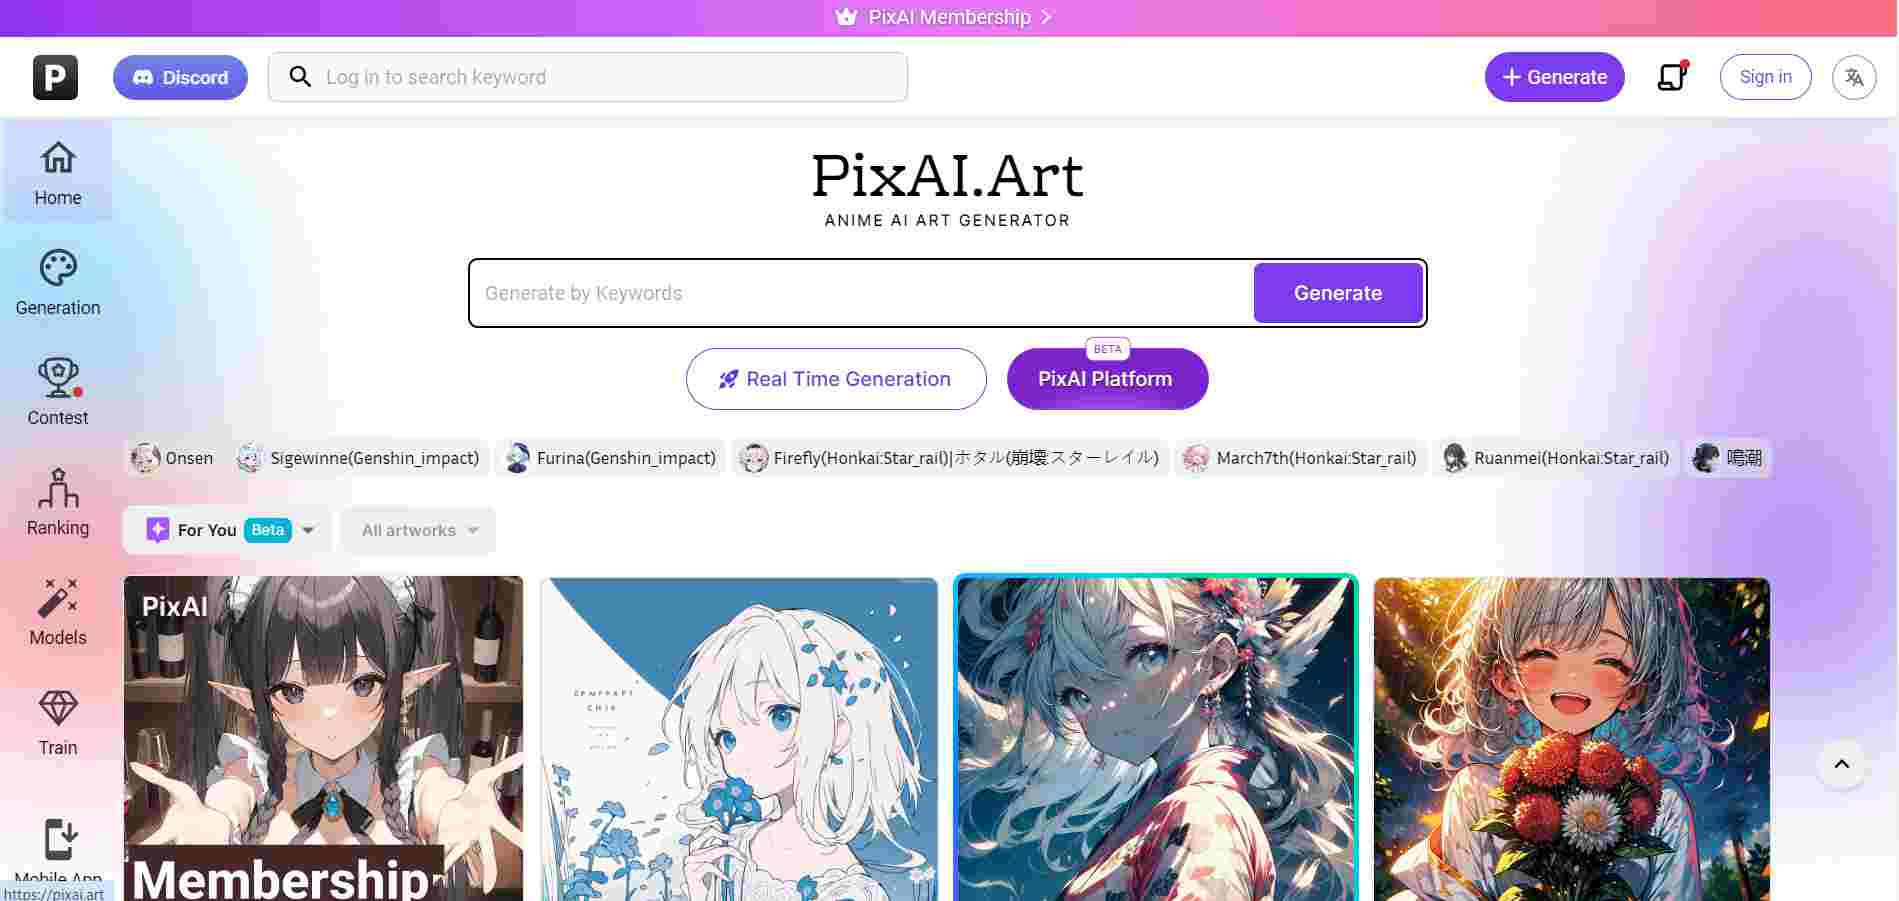  pixai.art-página inicial mostrando várias obras de arte de anime e barra de pesquisa 